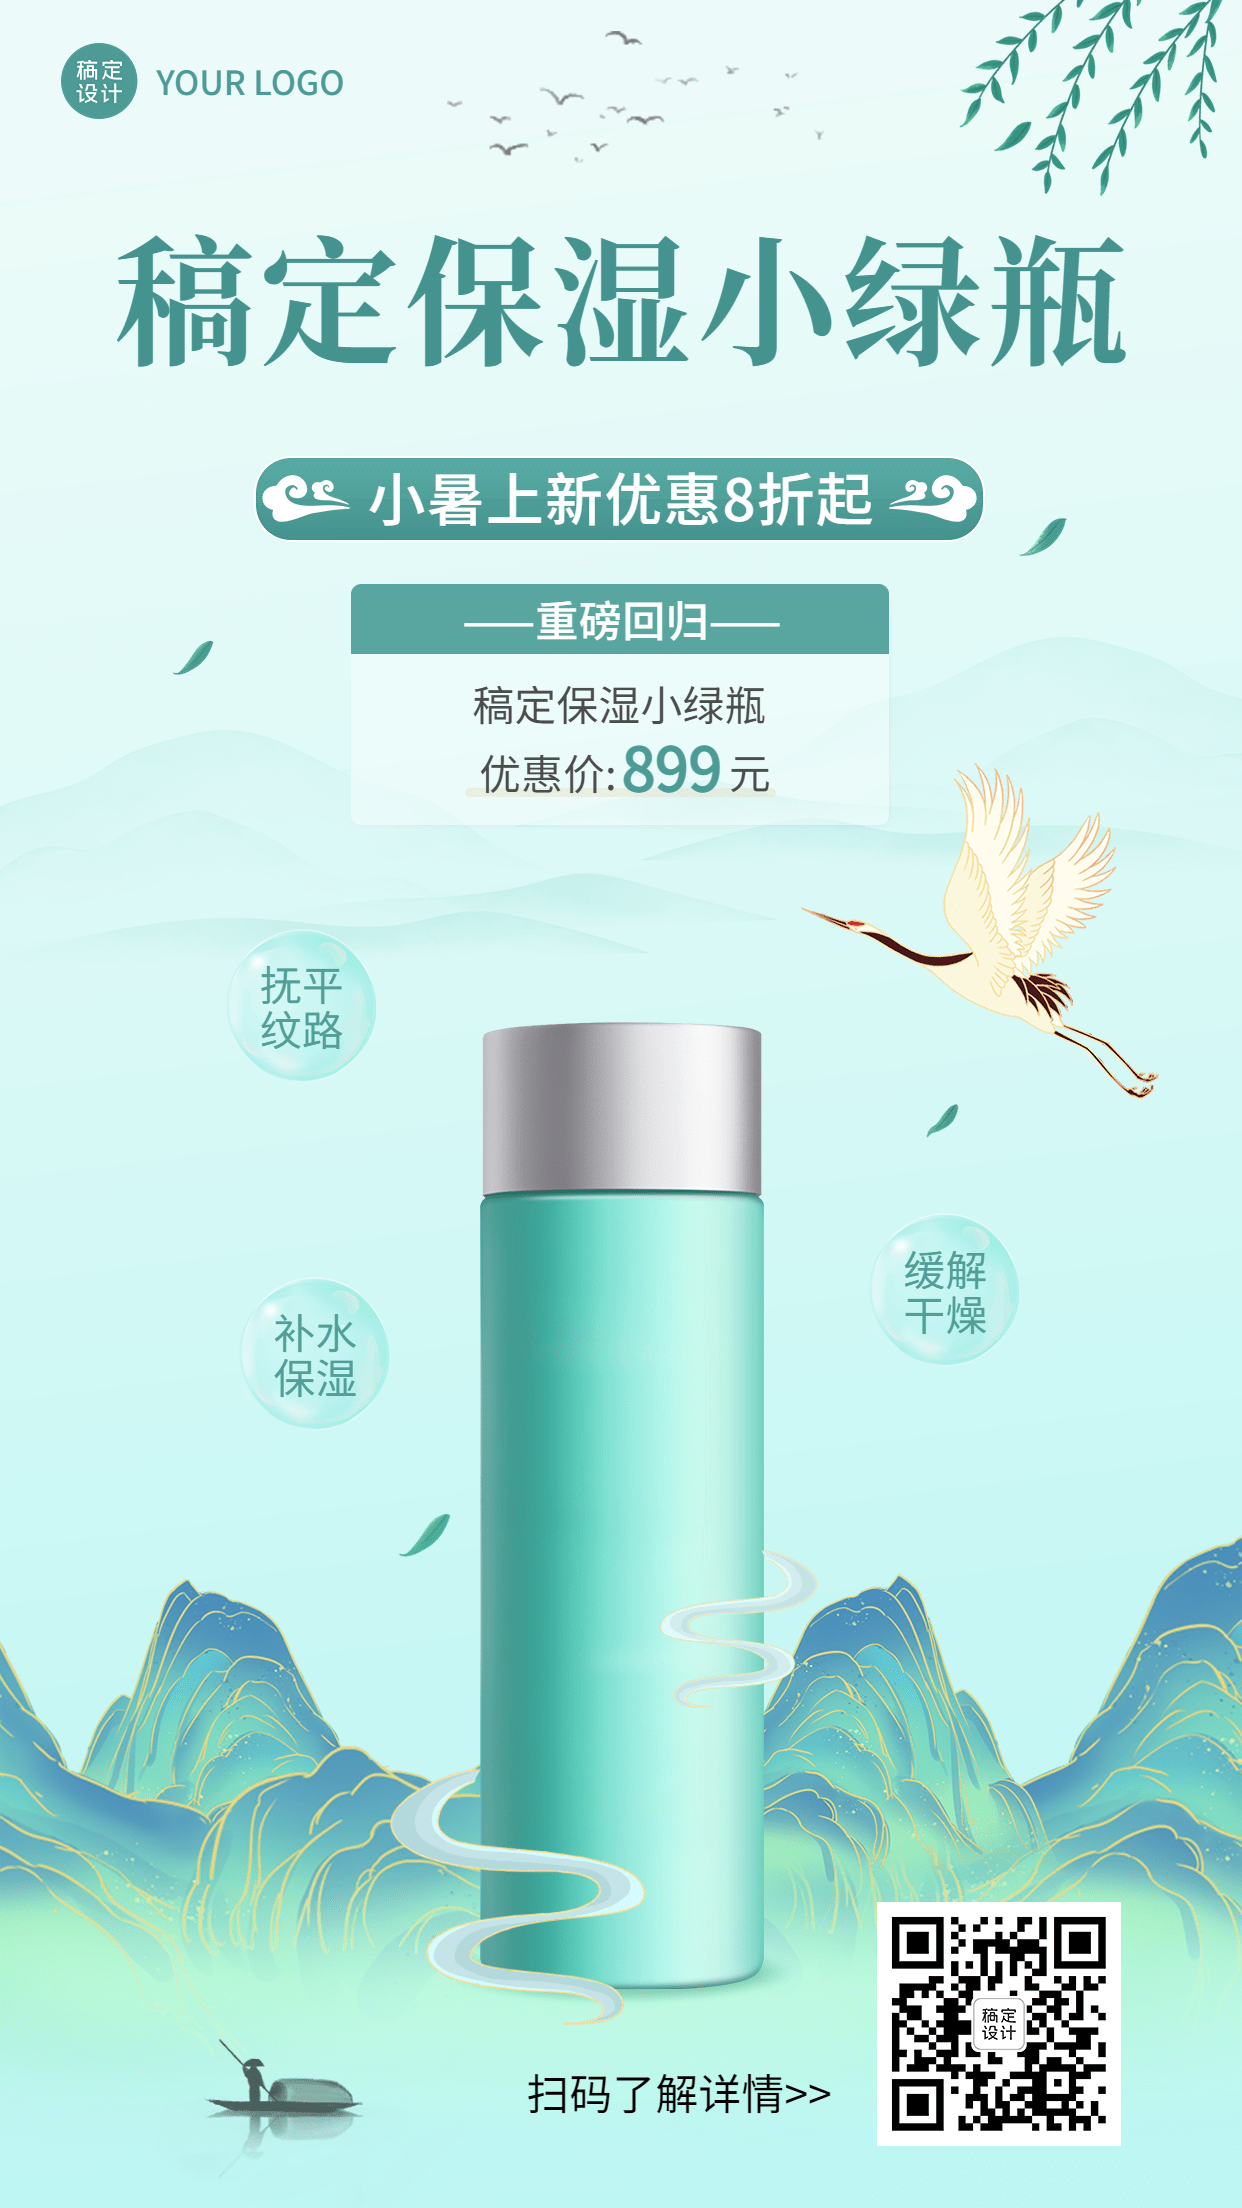 微商小暑美容护肤产品展示营销手机海报预览效果